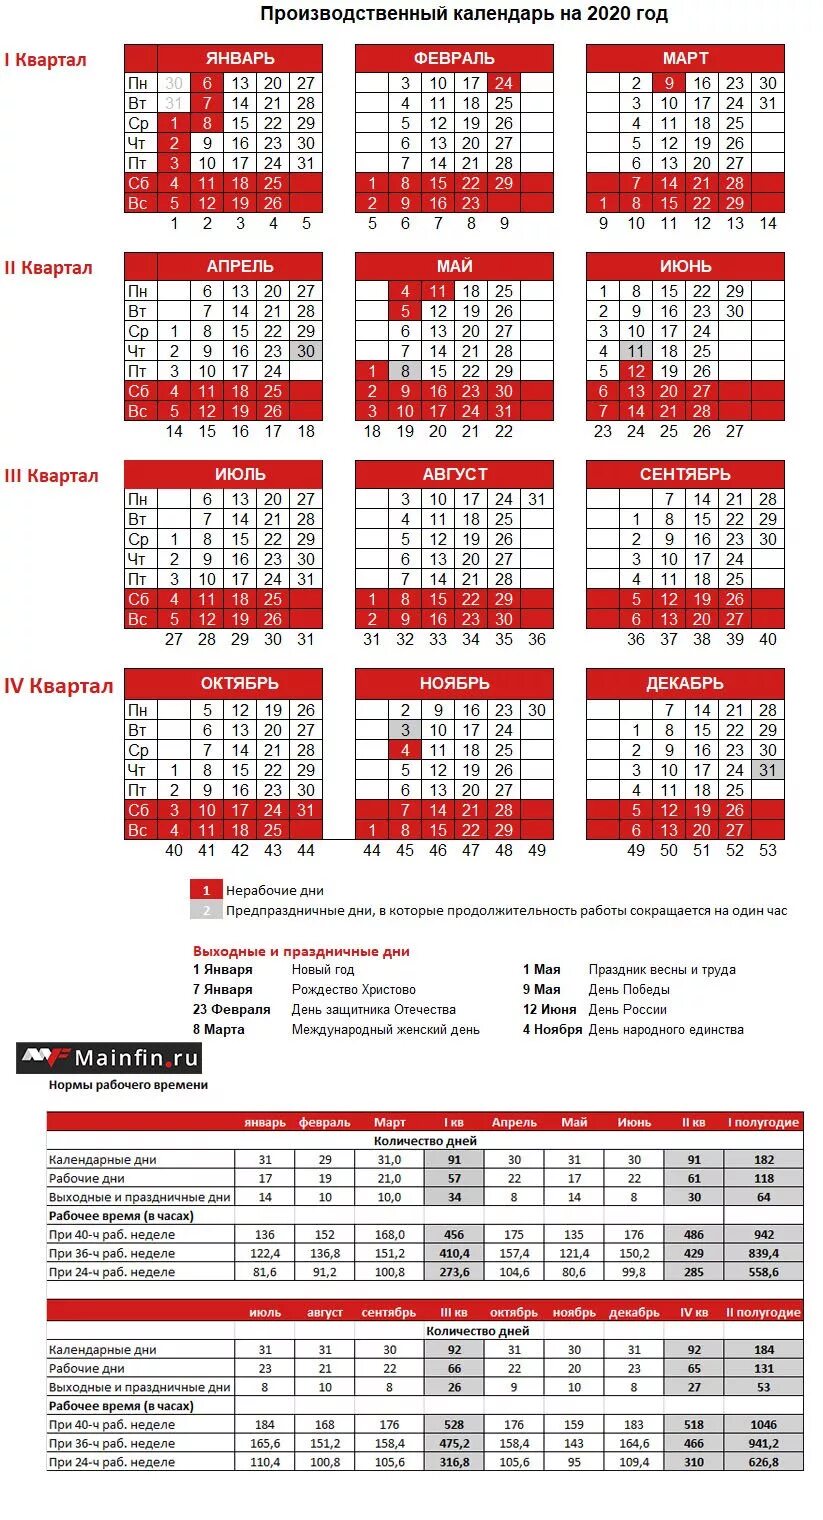 Сколько в году праздничных и выходных дней. Выходные и праздничные дни в 2020 году в России календарь. Производственный в 2020 году производственный календарь. Календарь 2020 года производственный праздничными днями и выходными. Календарь 2020 с нормой рабочего времени.